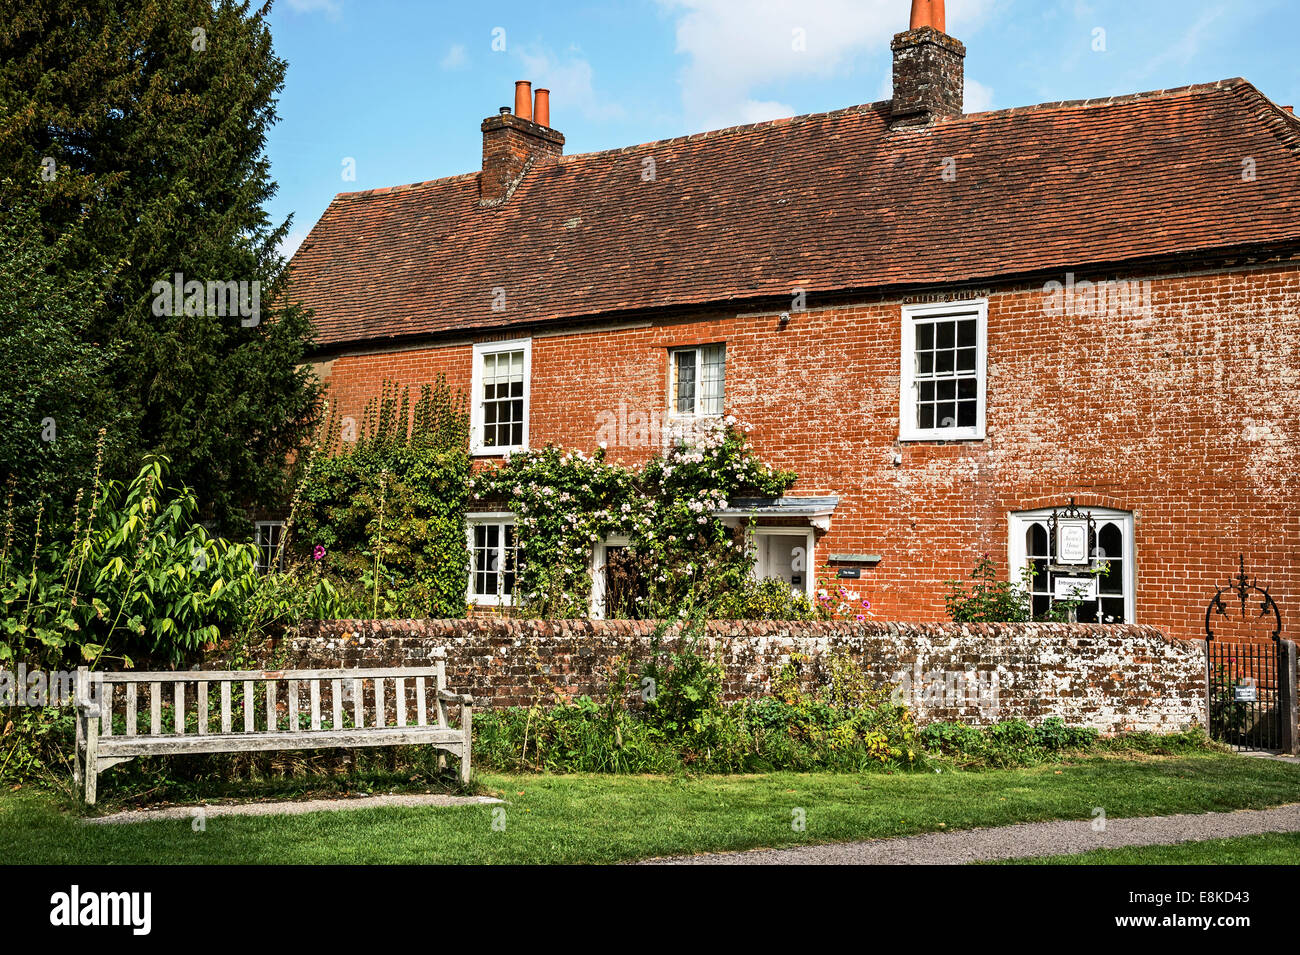 Maison de Jane Austen ; un musée à Chawton, dans le Hampshire, Angleterre, Royaume-Uni, Grande Bretagne, Wohnhaus von Jane Austen Banque D'Images